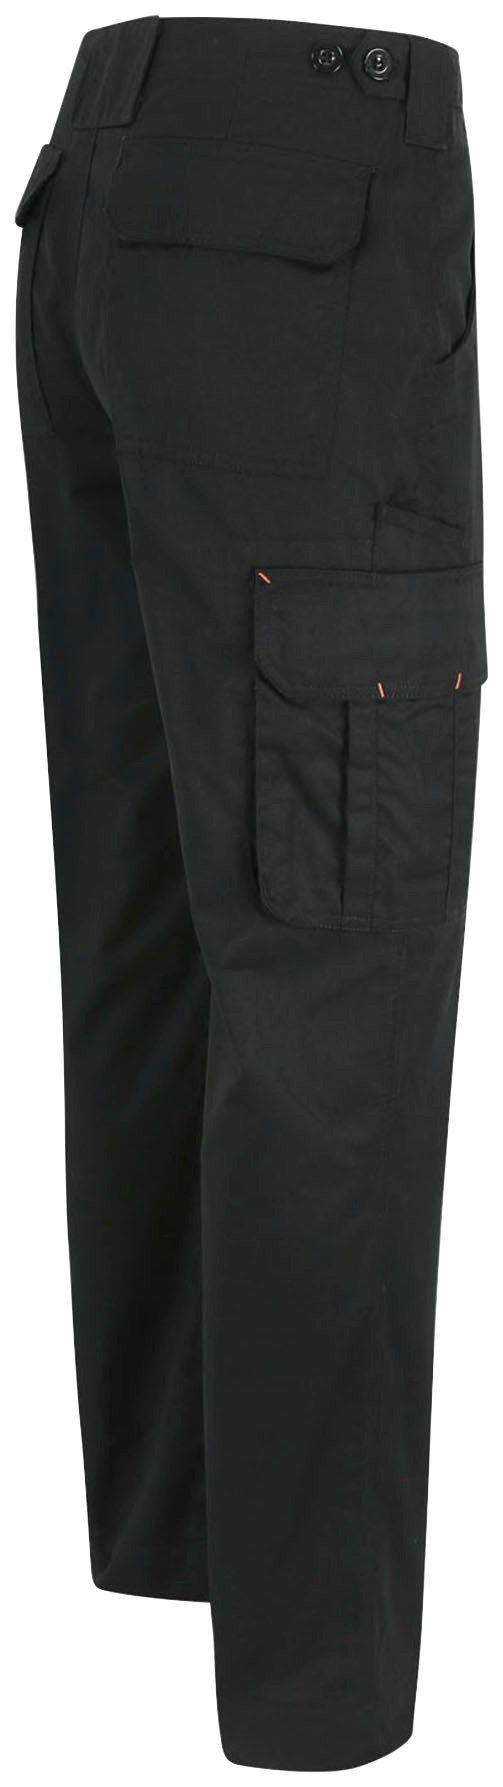 einstellbarer Arbeitshose Herock viele Thor Farben 7 schwarz Hose Taschen, Bund, leicht, Wasserabweisend,